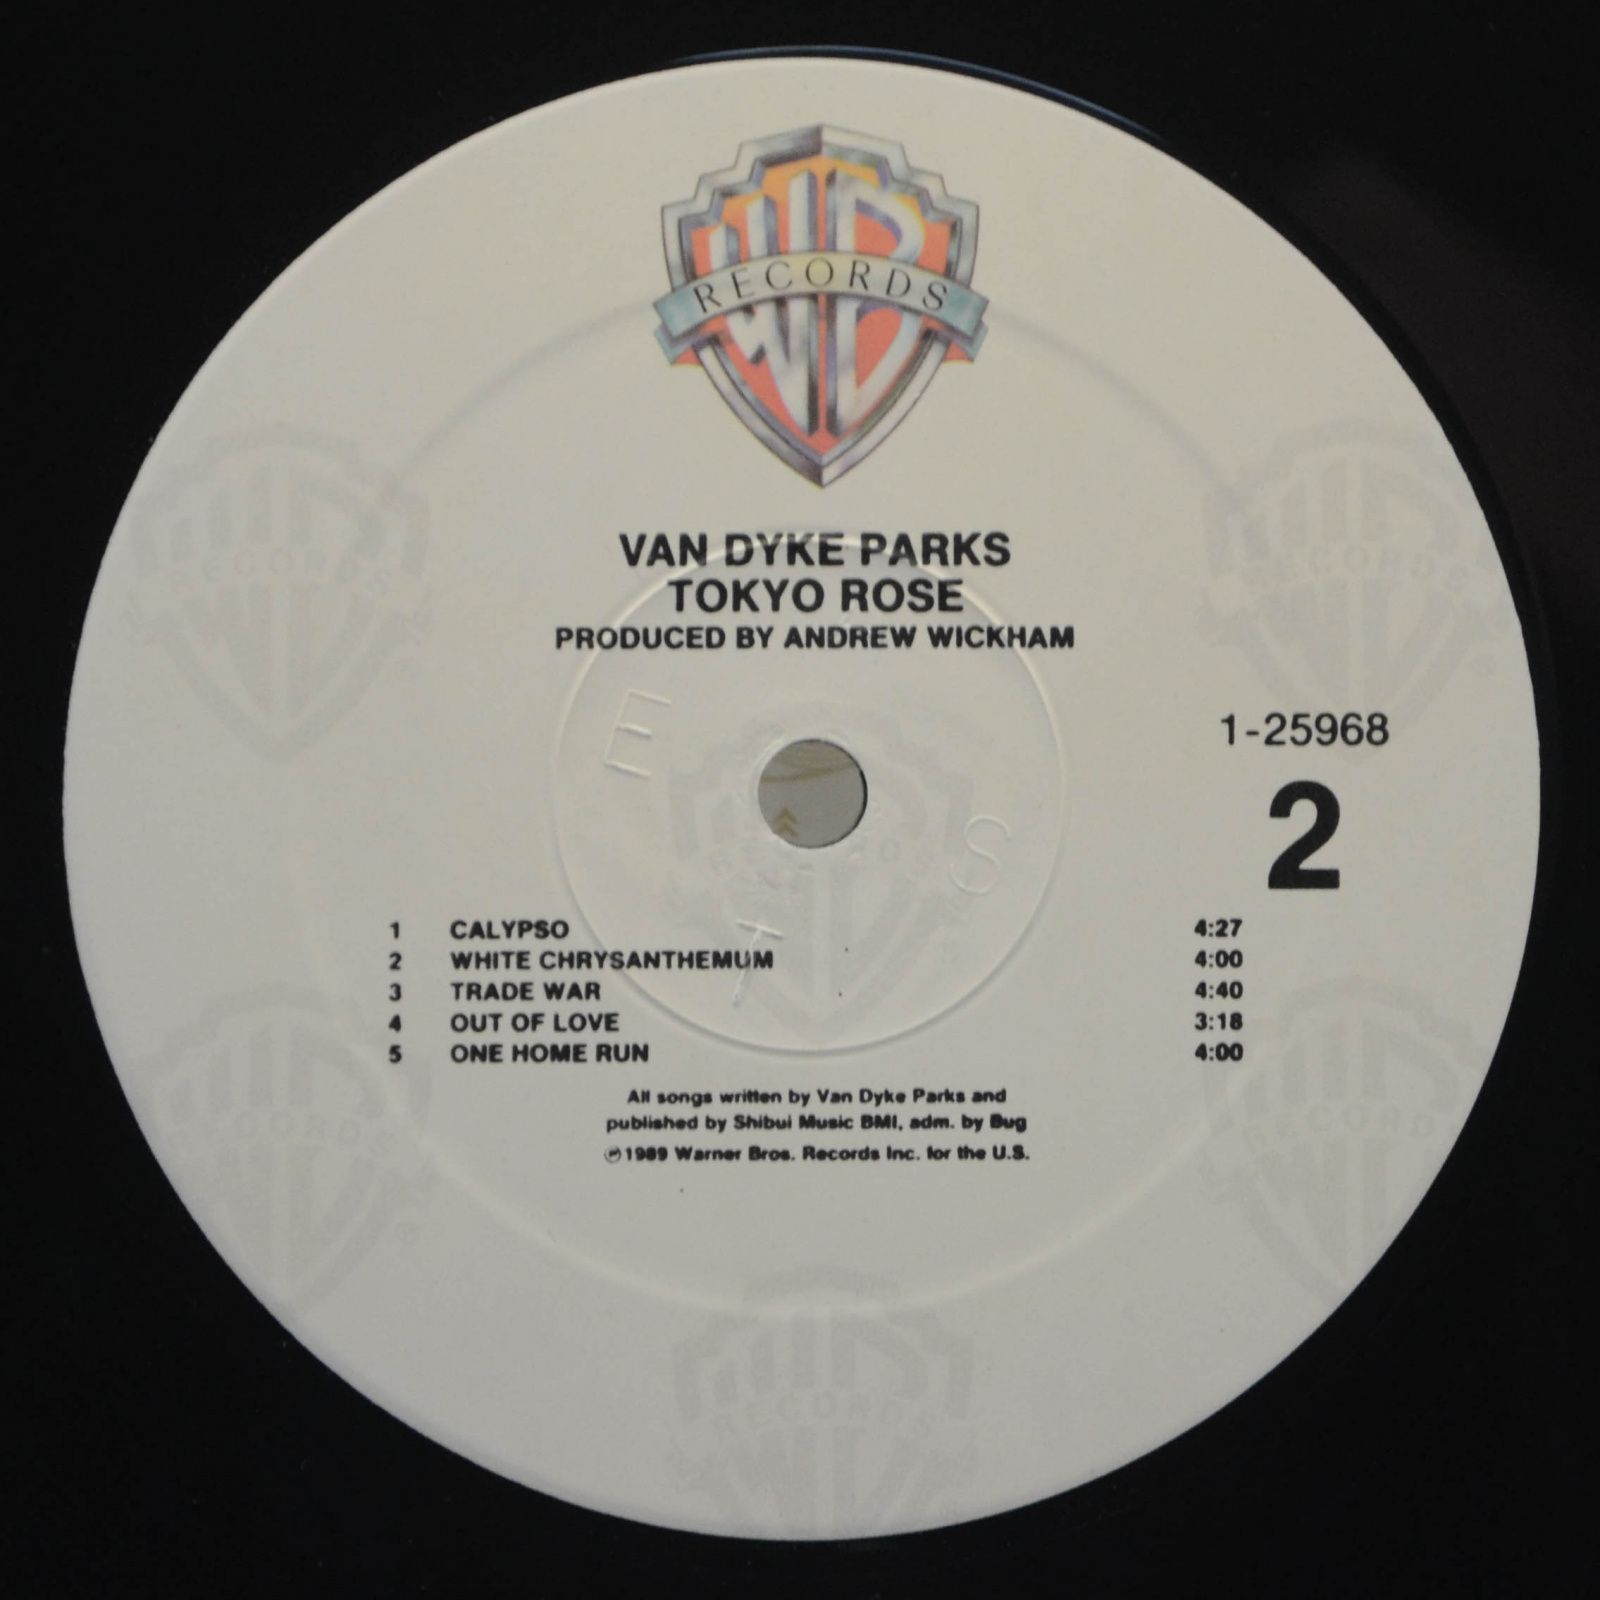 Van Dyke Parks — Tokyo Rose, 1989